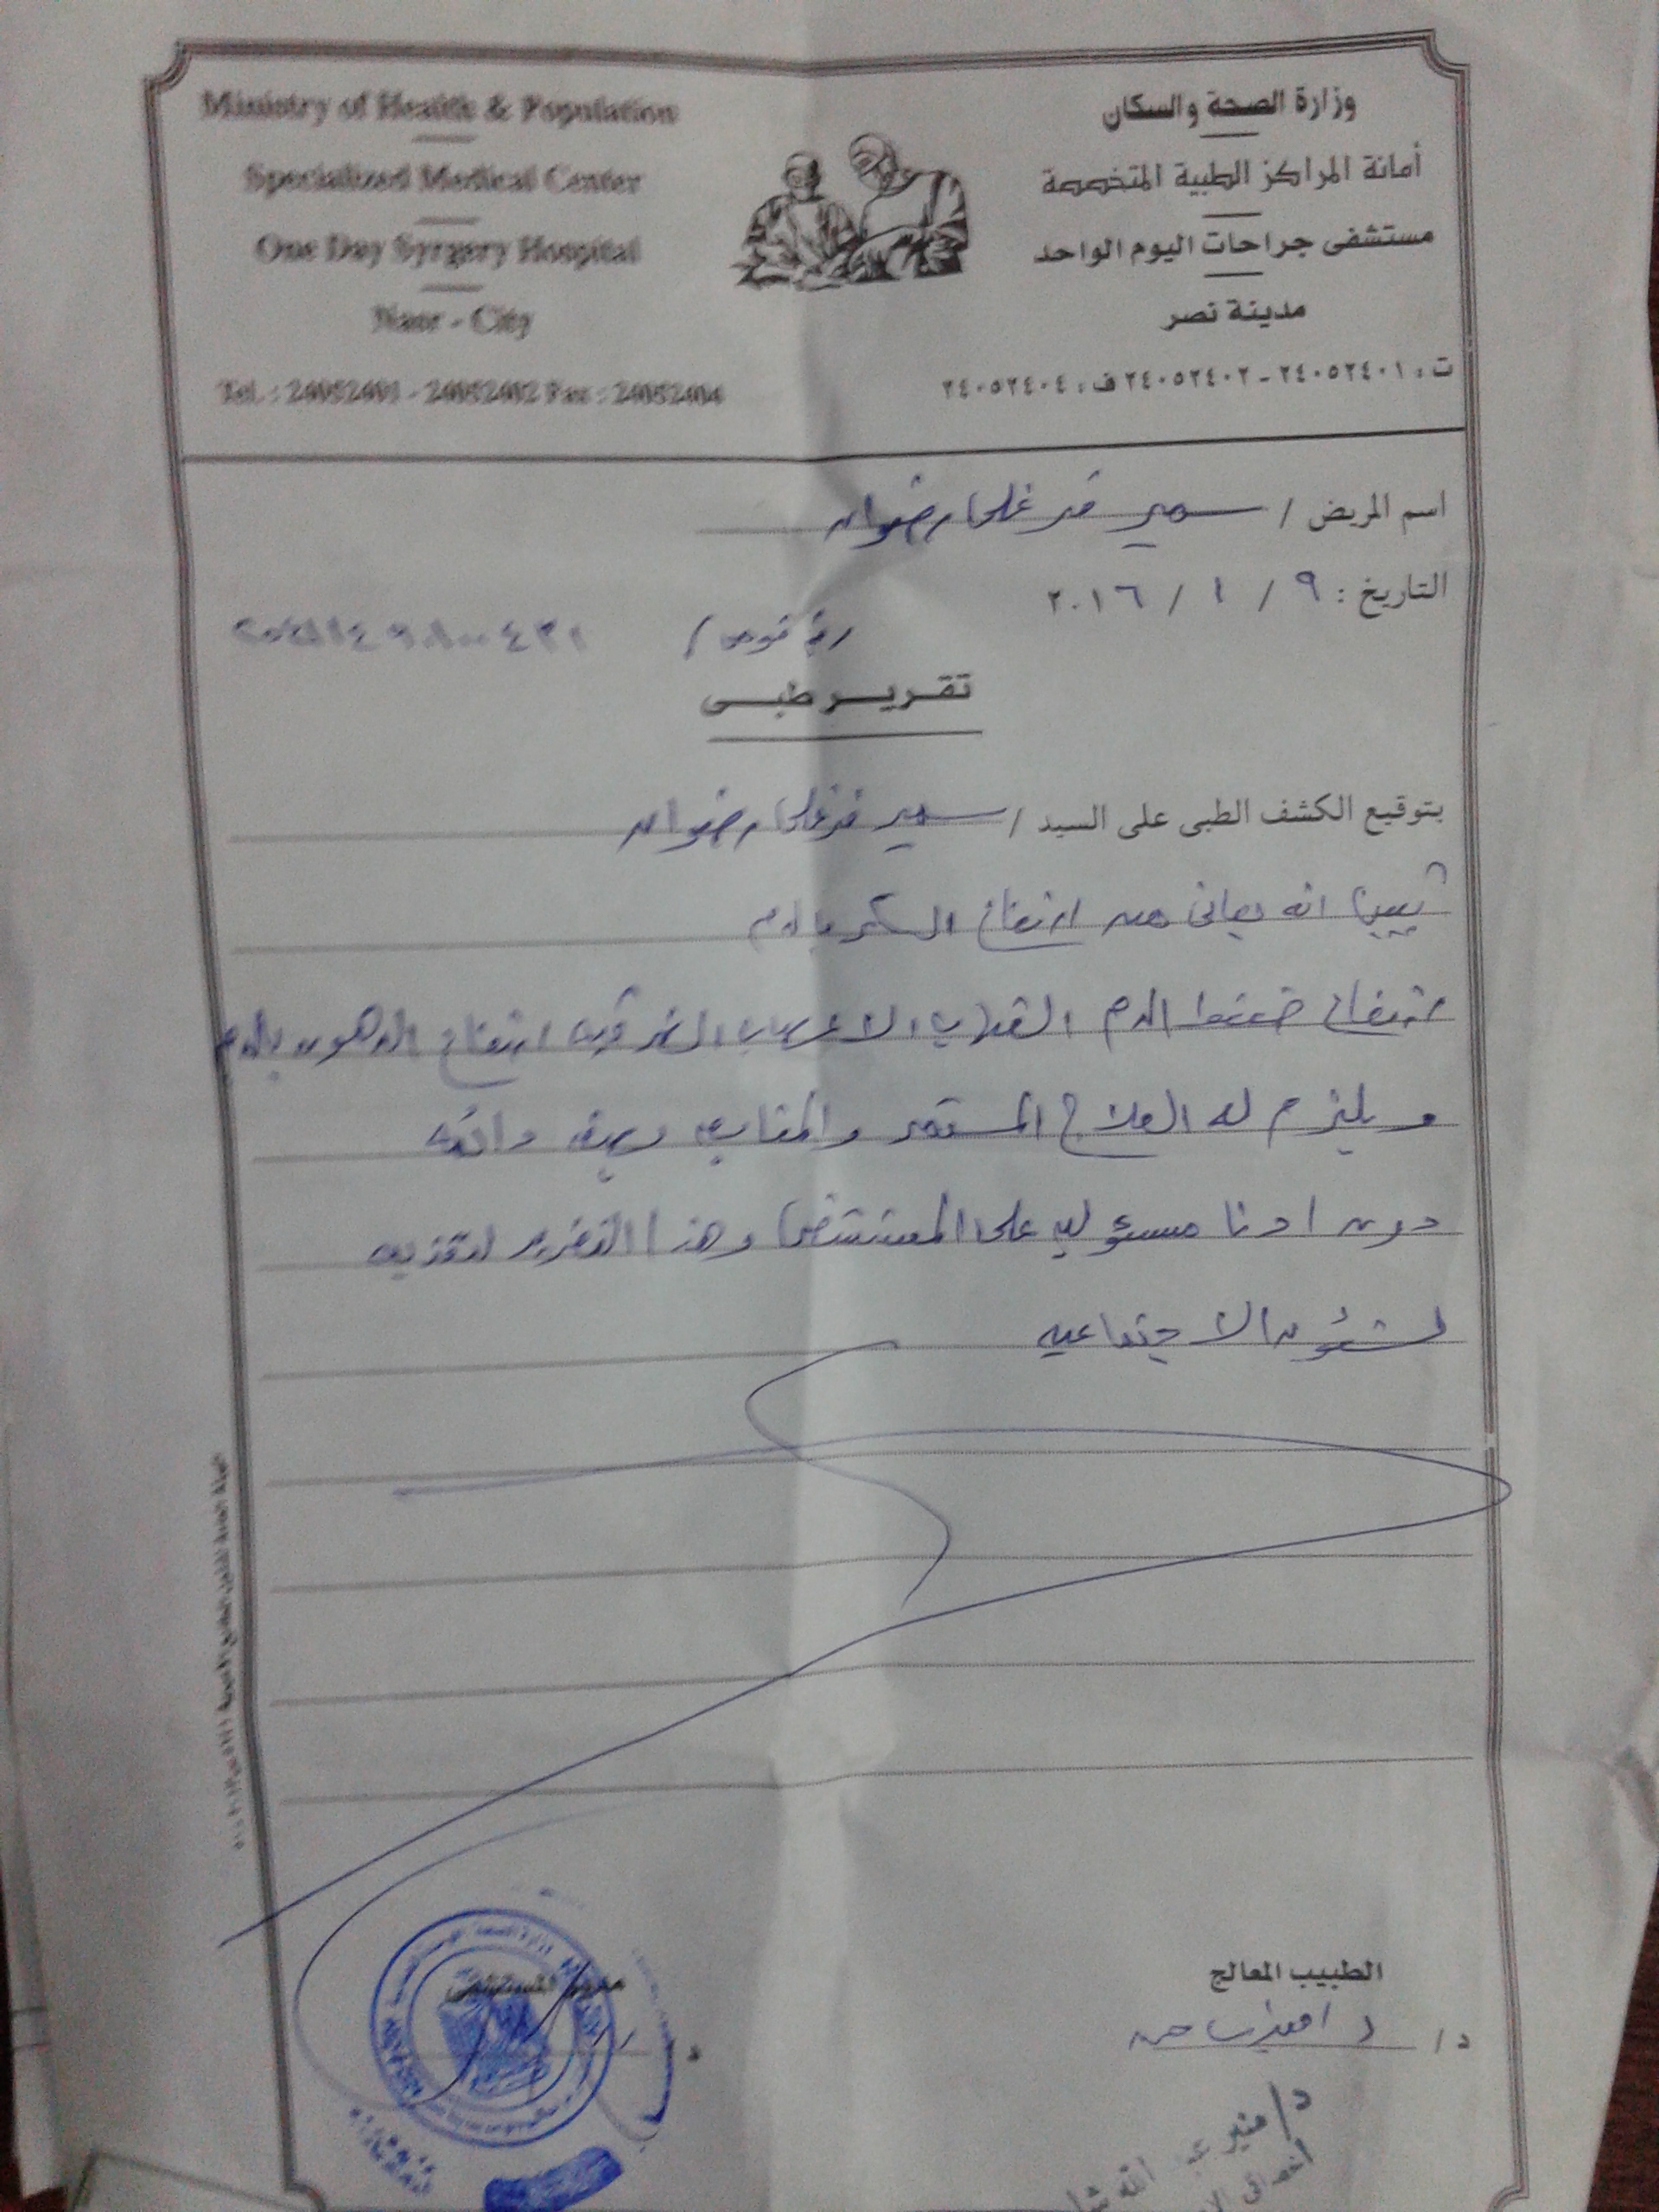 شهادة مرضية تقرير طبي مختوم من مستشفى حكومي مصري